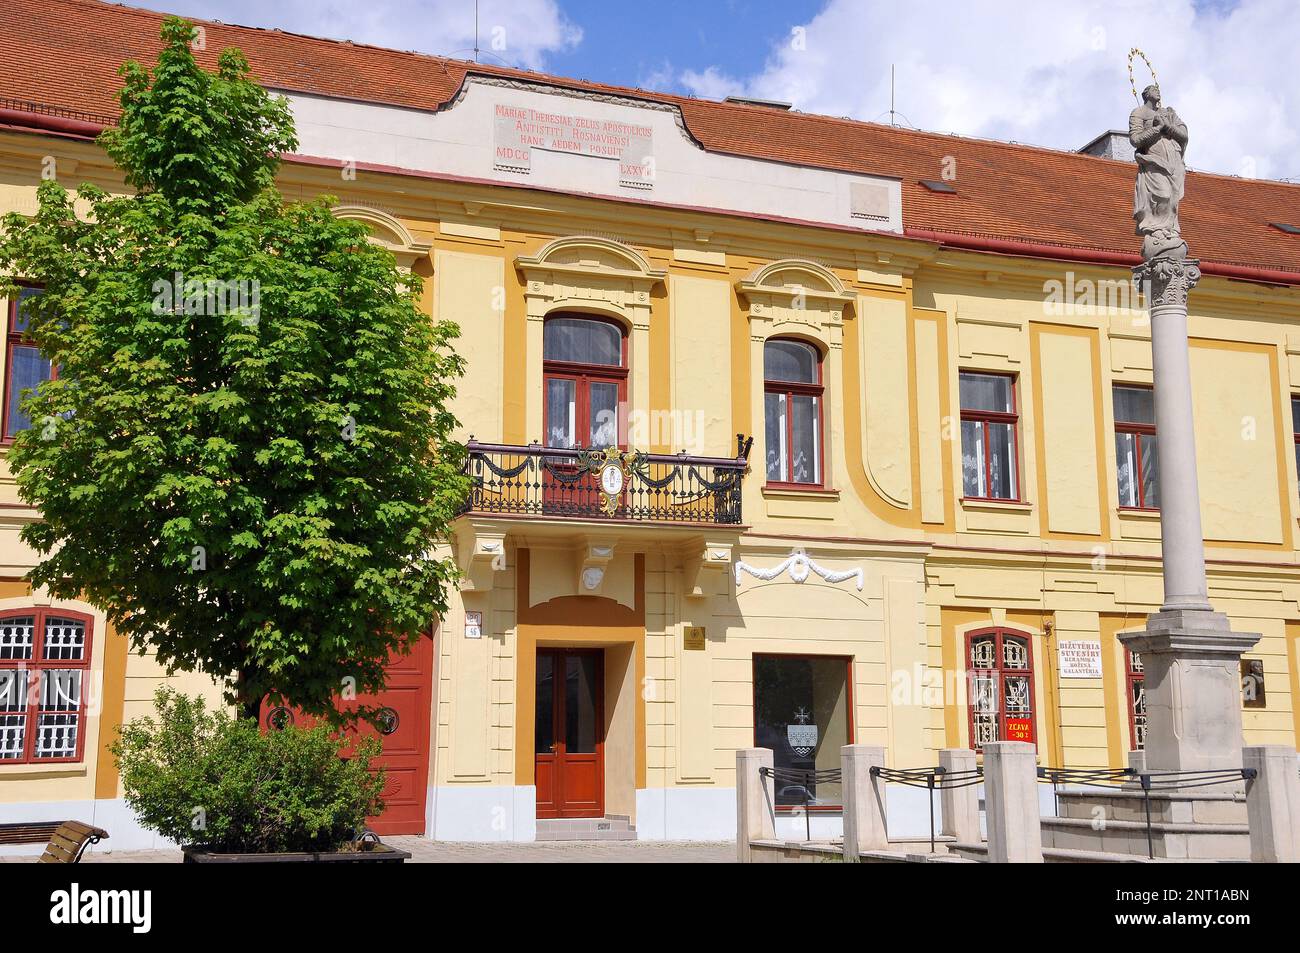 Palacio del Obispo, Biskupský palác, Rožňava, Rozsnyó, Región de Košice, República Eslovaca, Europa Foto de stock